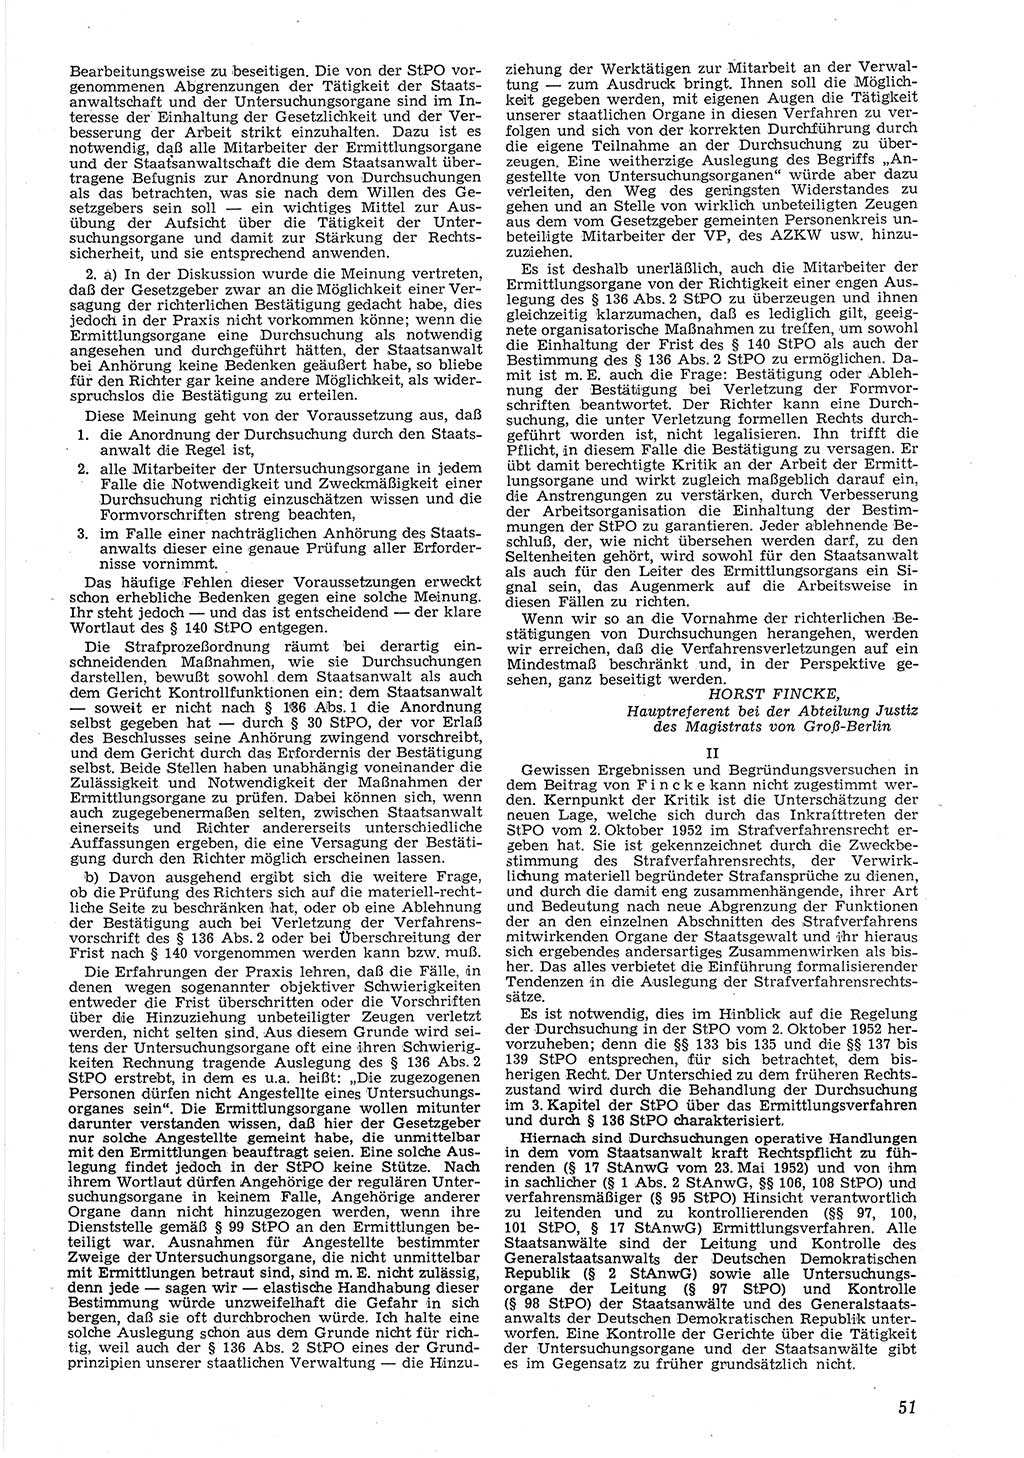 Neue Justiz (NJ), Zeitschrift für Recht und Rechtswissenschaft [Deutsche Demokratische Republik (DDR)], 8. Jahrgang 1954, Seite 51 (NJ DDR 1954, S. 51)